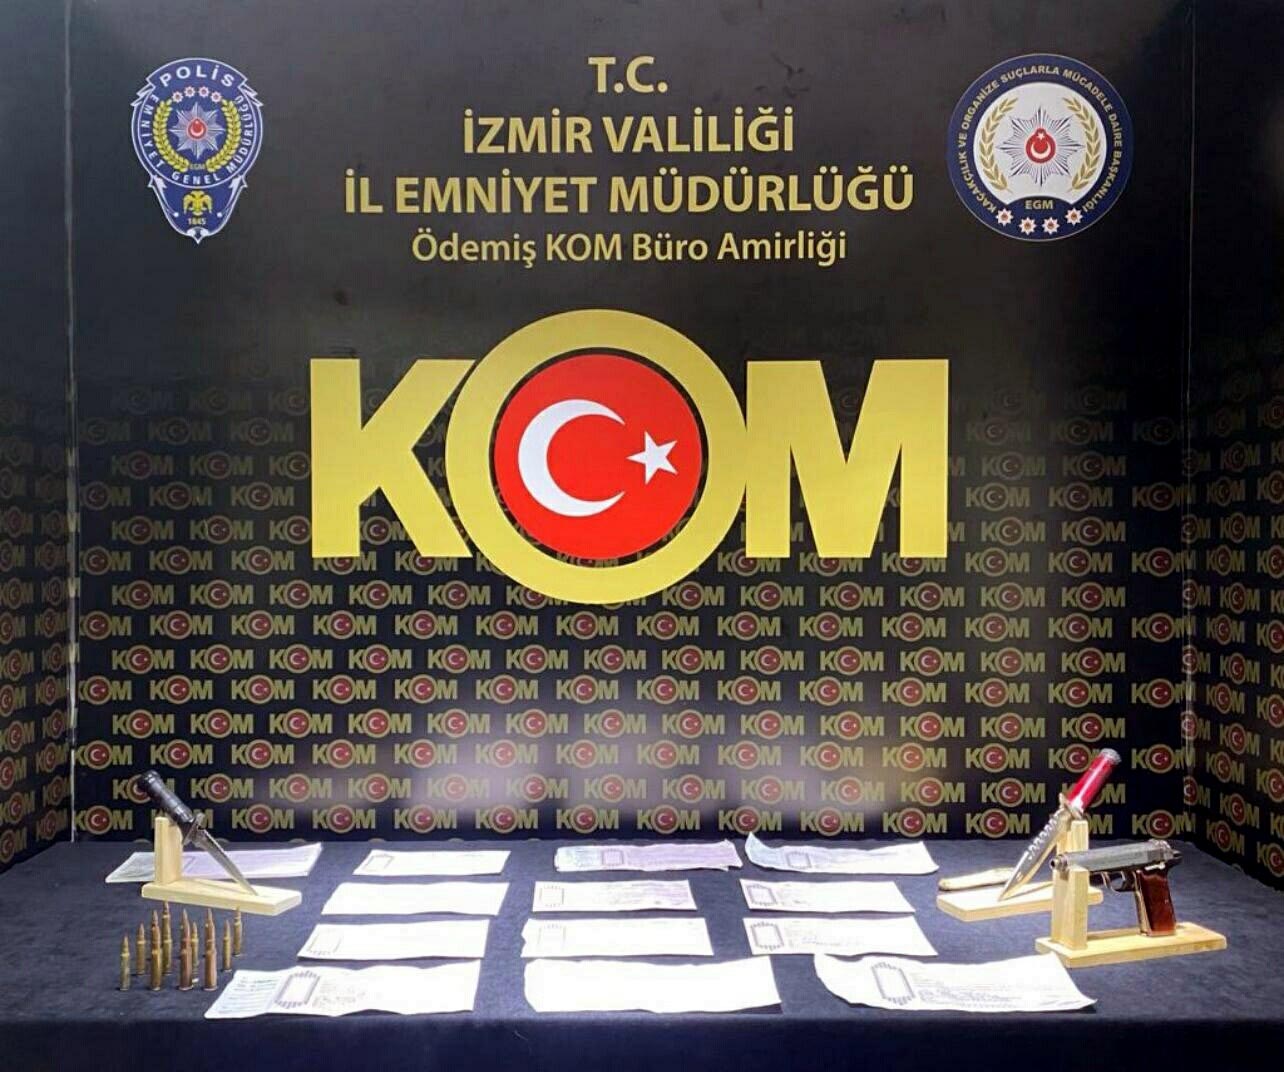 İzmir’de tefecilik faaliyetlerine yönelik operasyon düzenlendi ve 4 ilçede yapılan baskınlarda 7 kişi gözaltına alındı.